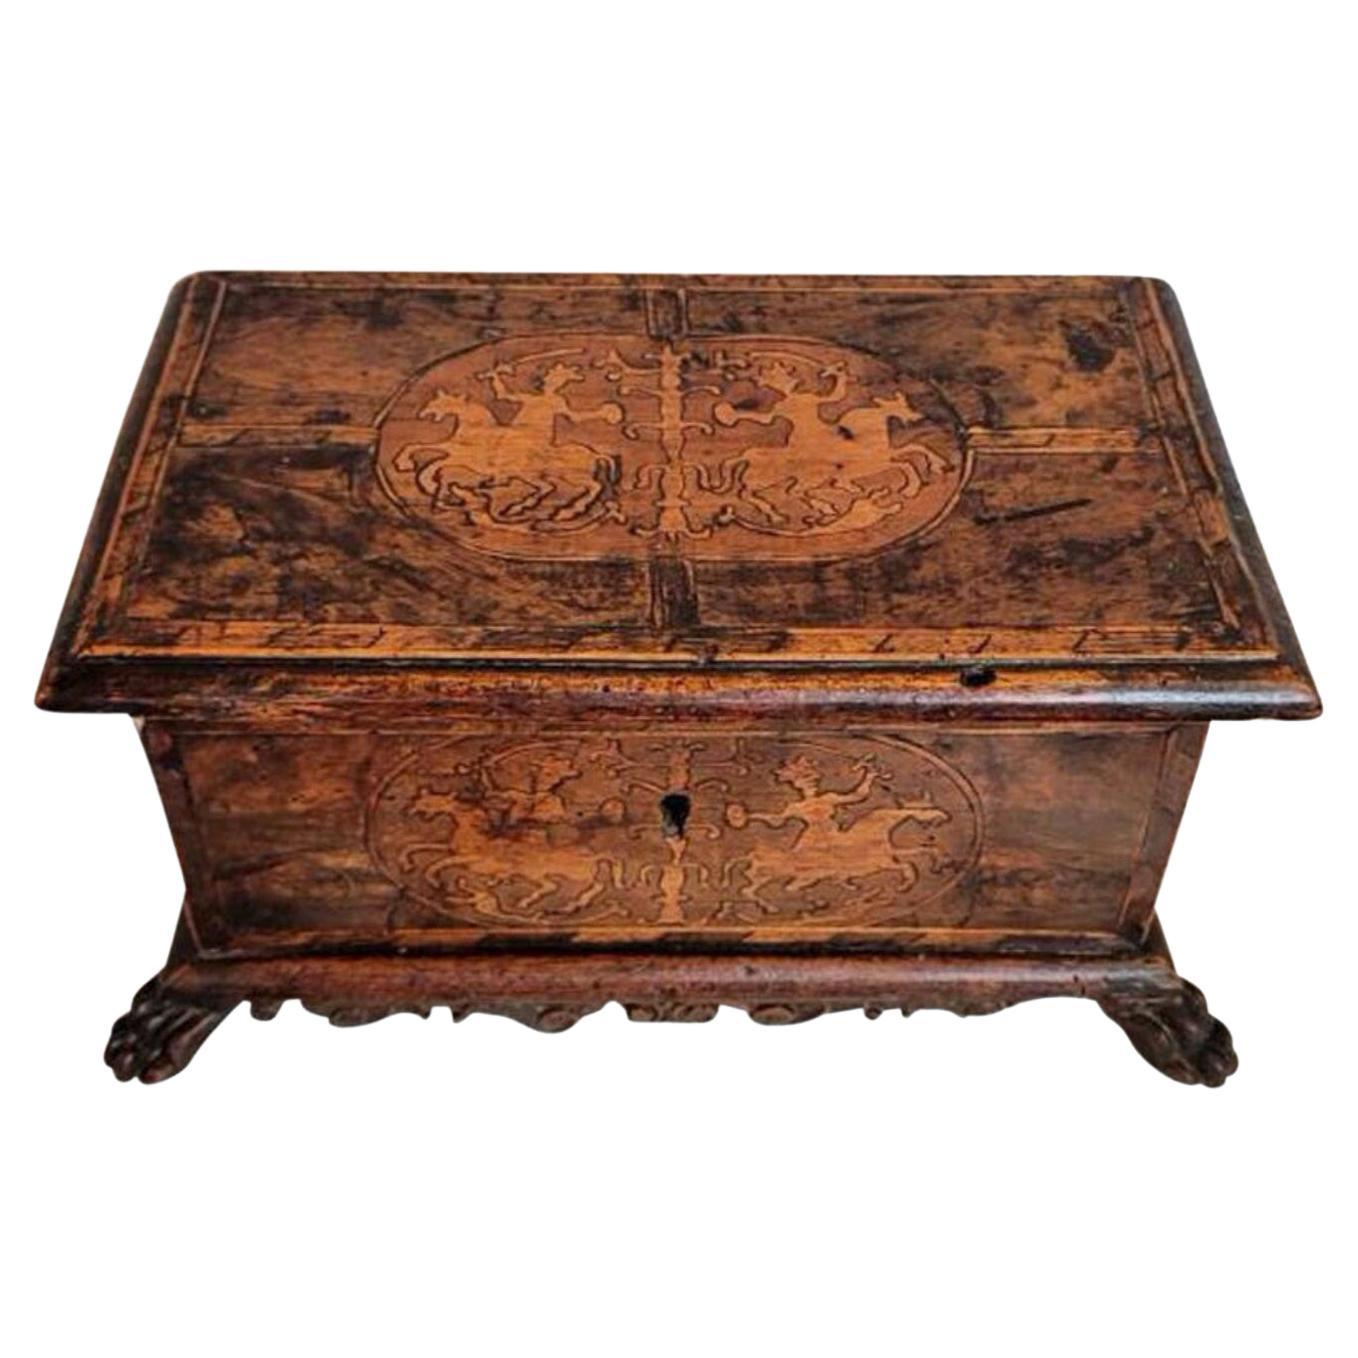 Caja de mesa de marquetería veneciana italiana de los siglos XVII-XVIII